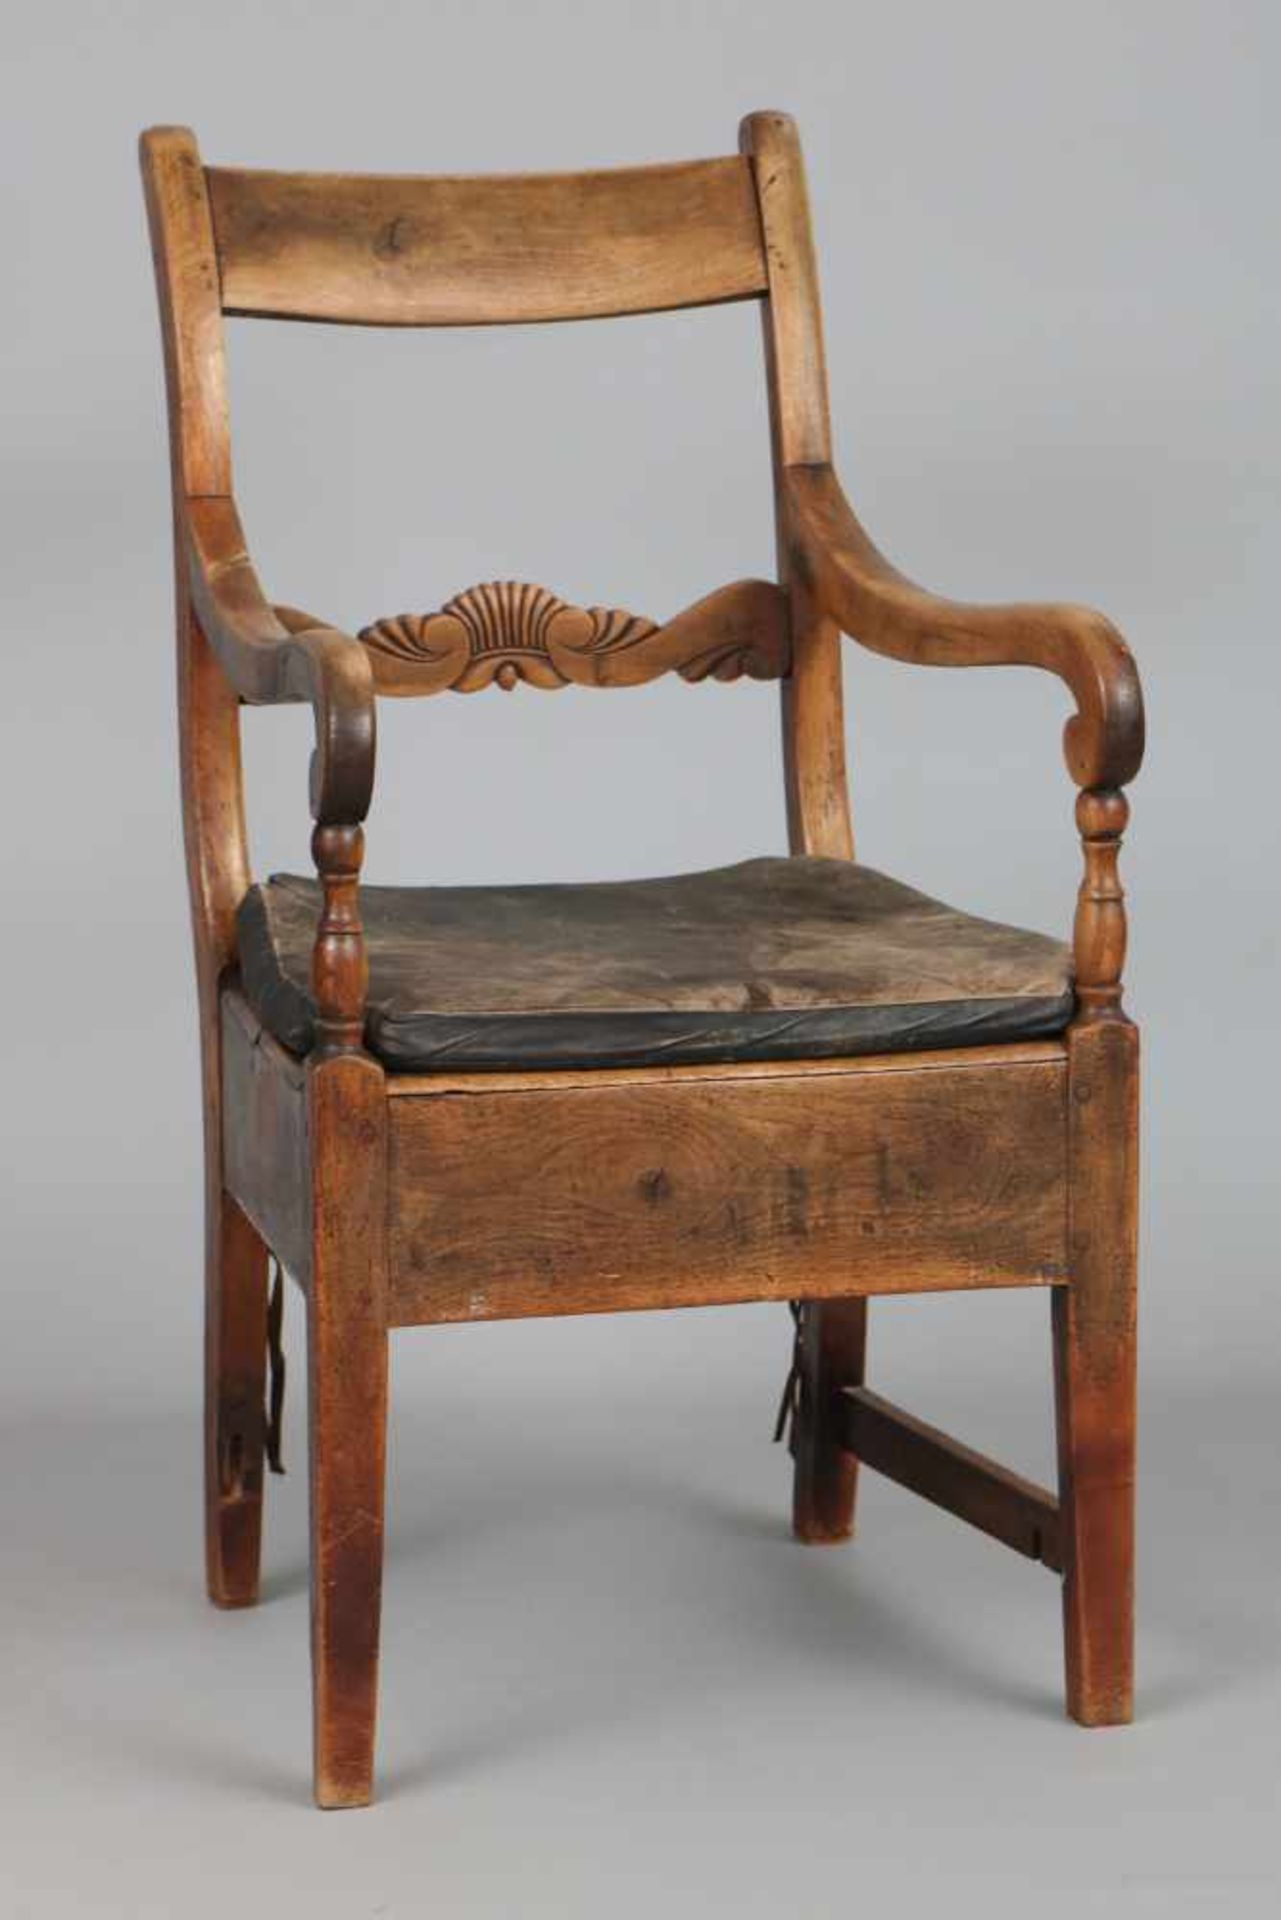 Englischer ArmlehnstuhlMahagoni, 1. Hälfte 19. Jhdt. (George III.), eckige Sitzfläche, 1